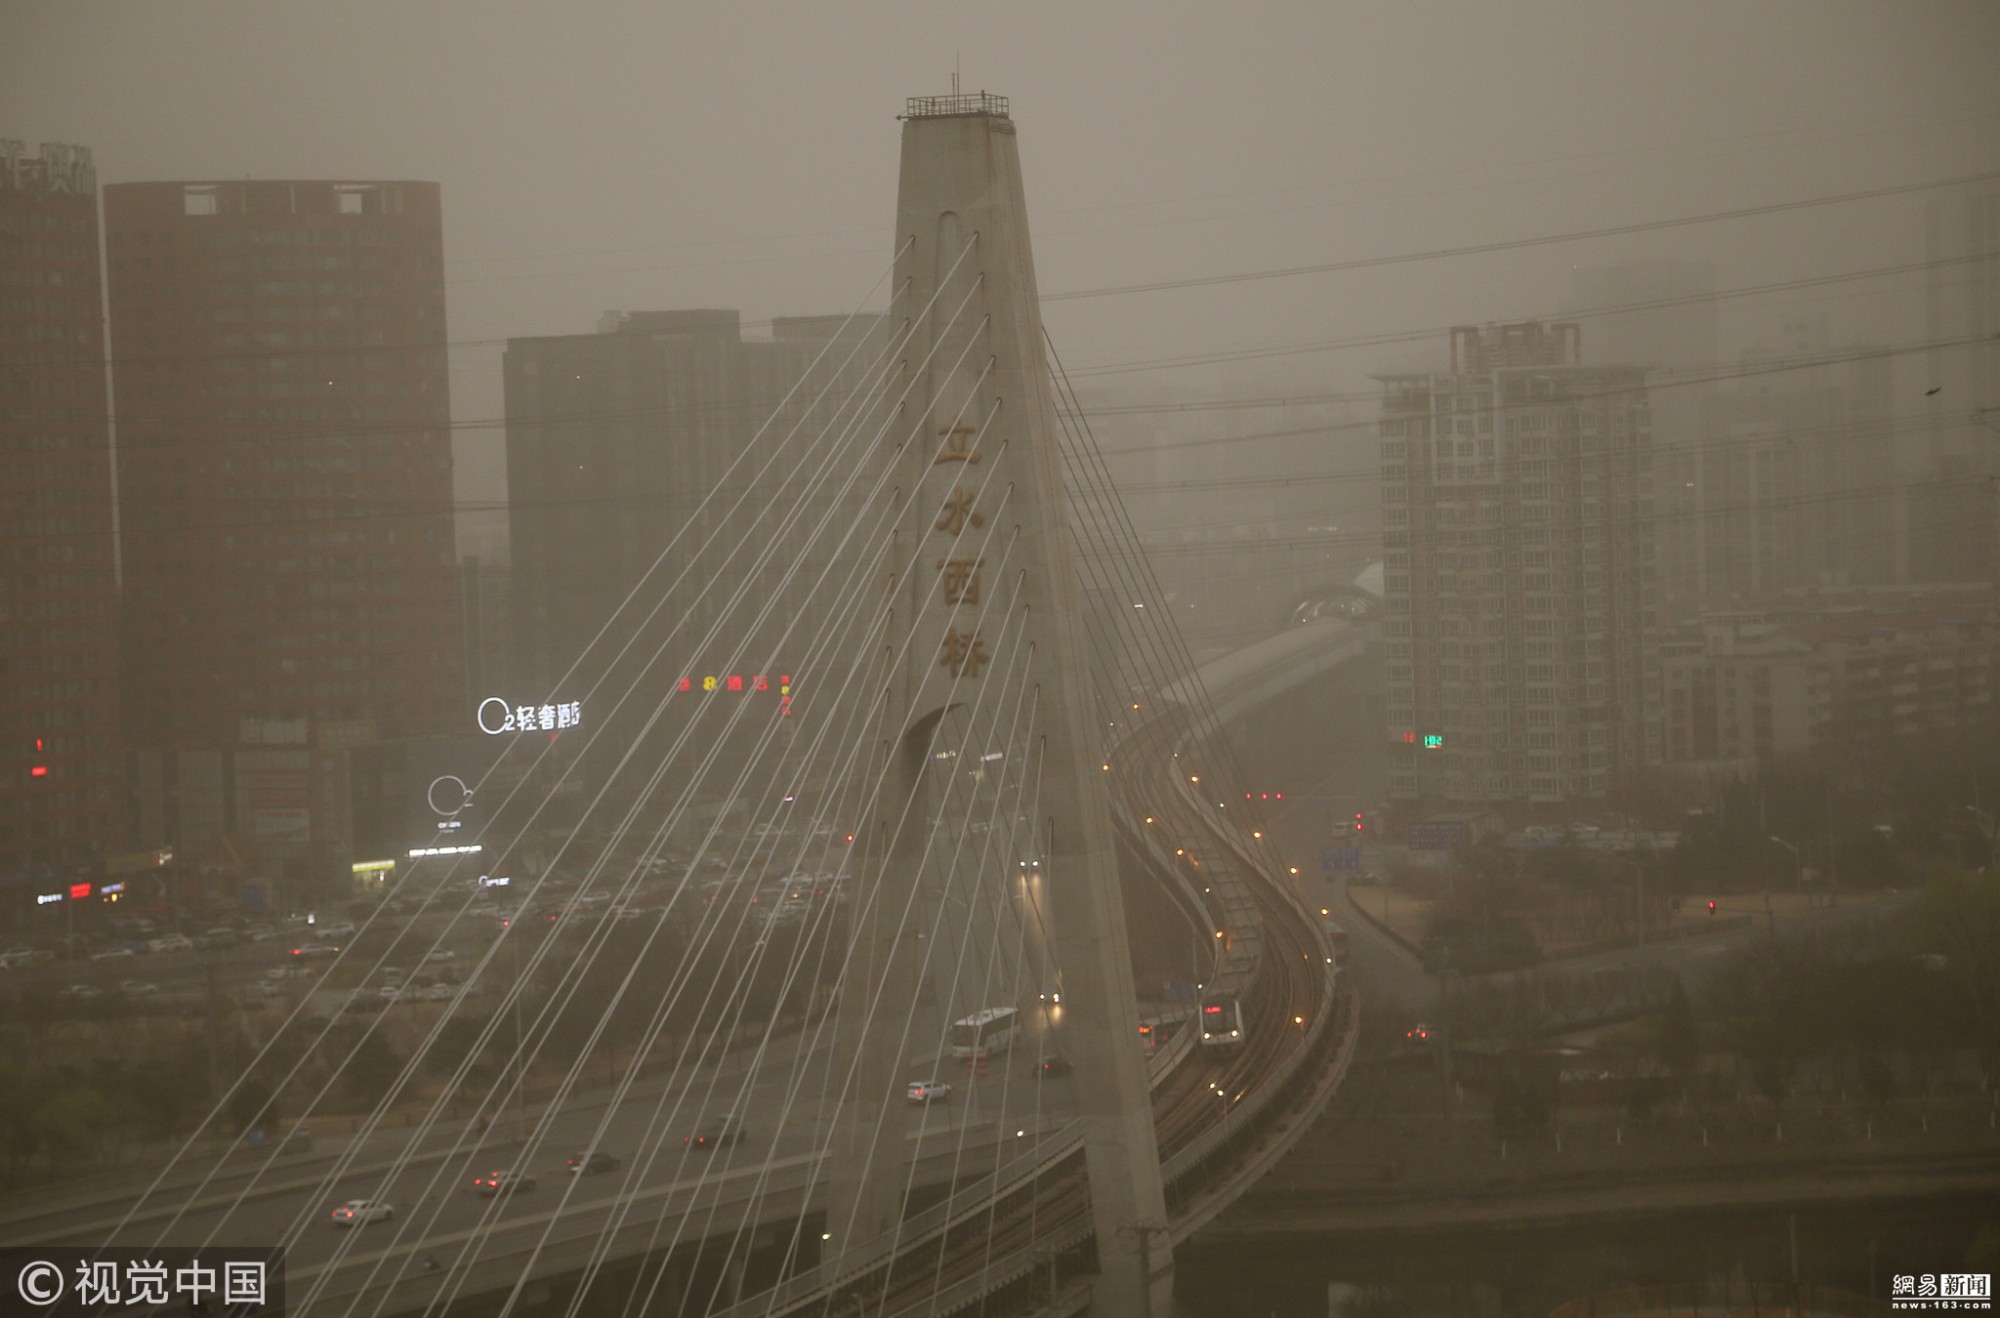 Beijing Sandstorm